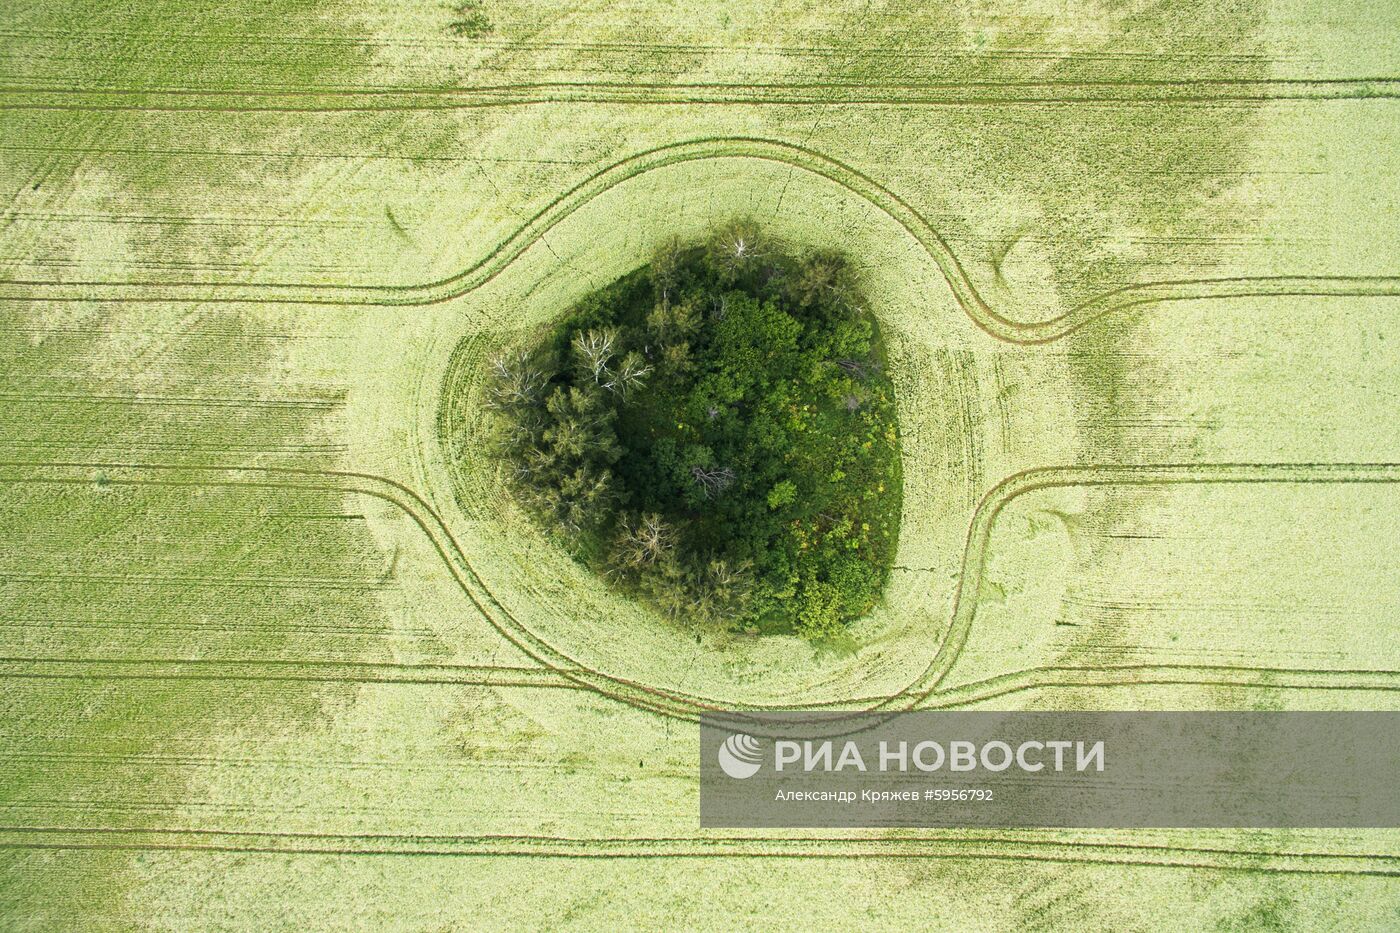 Сельскохозяйственные работы в Новосибирской области